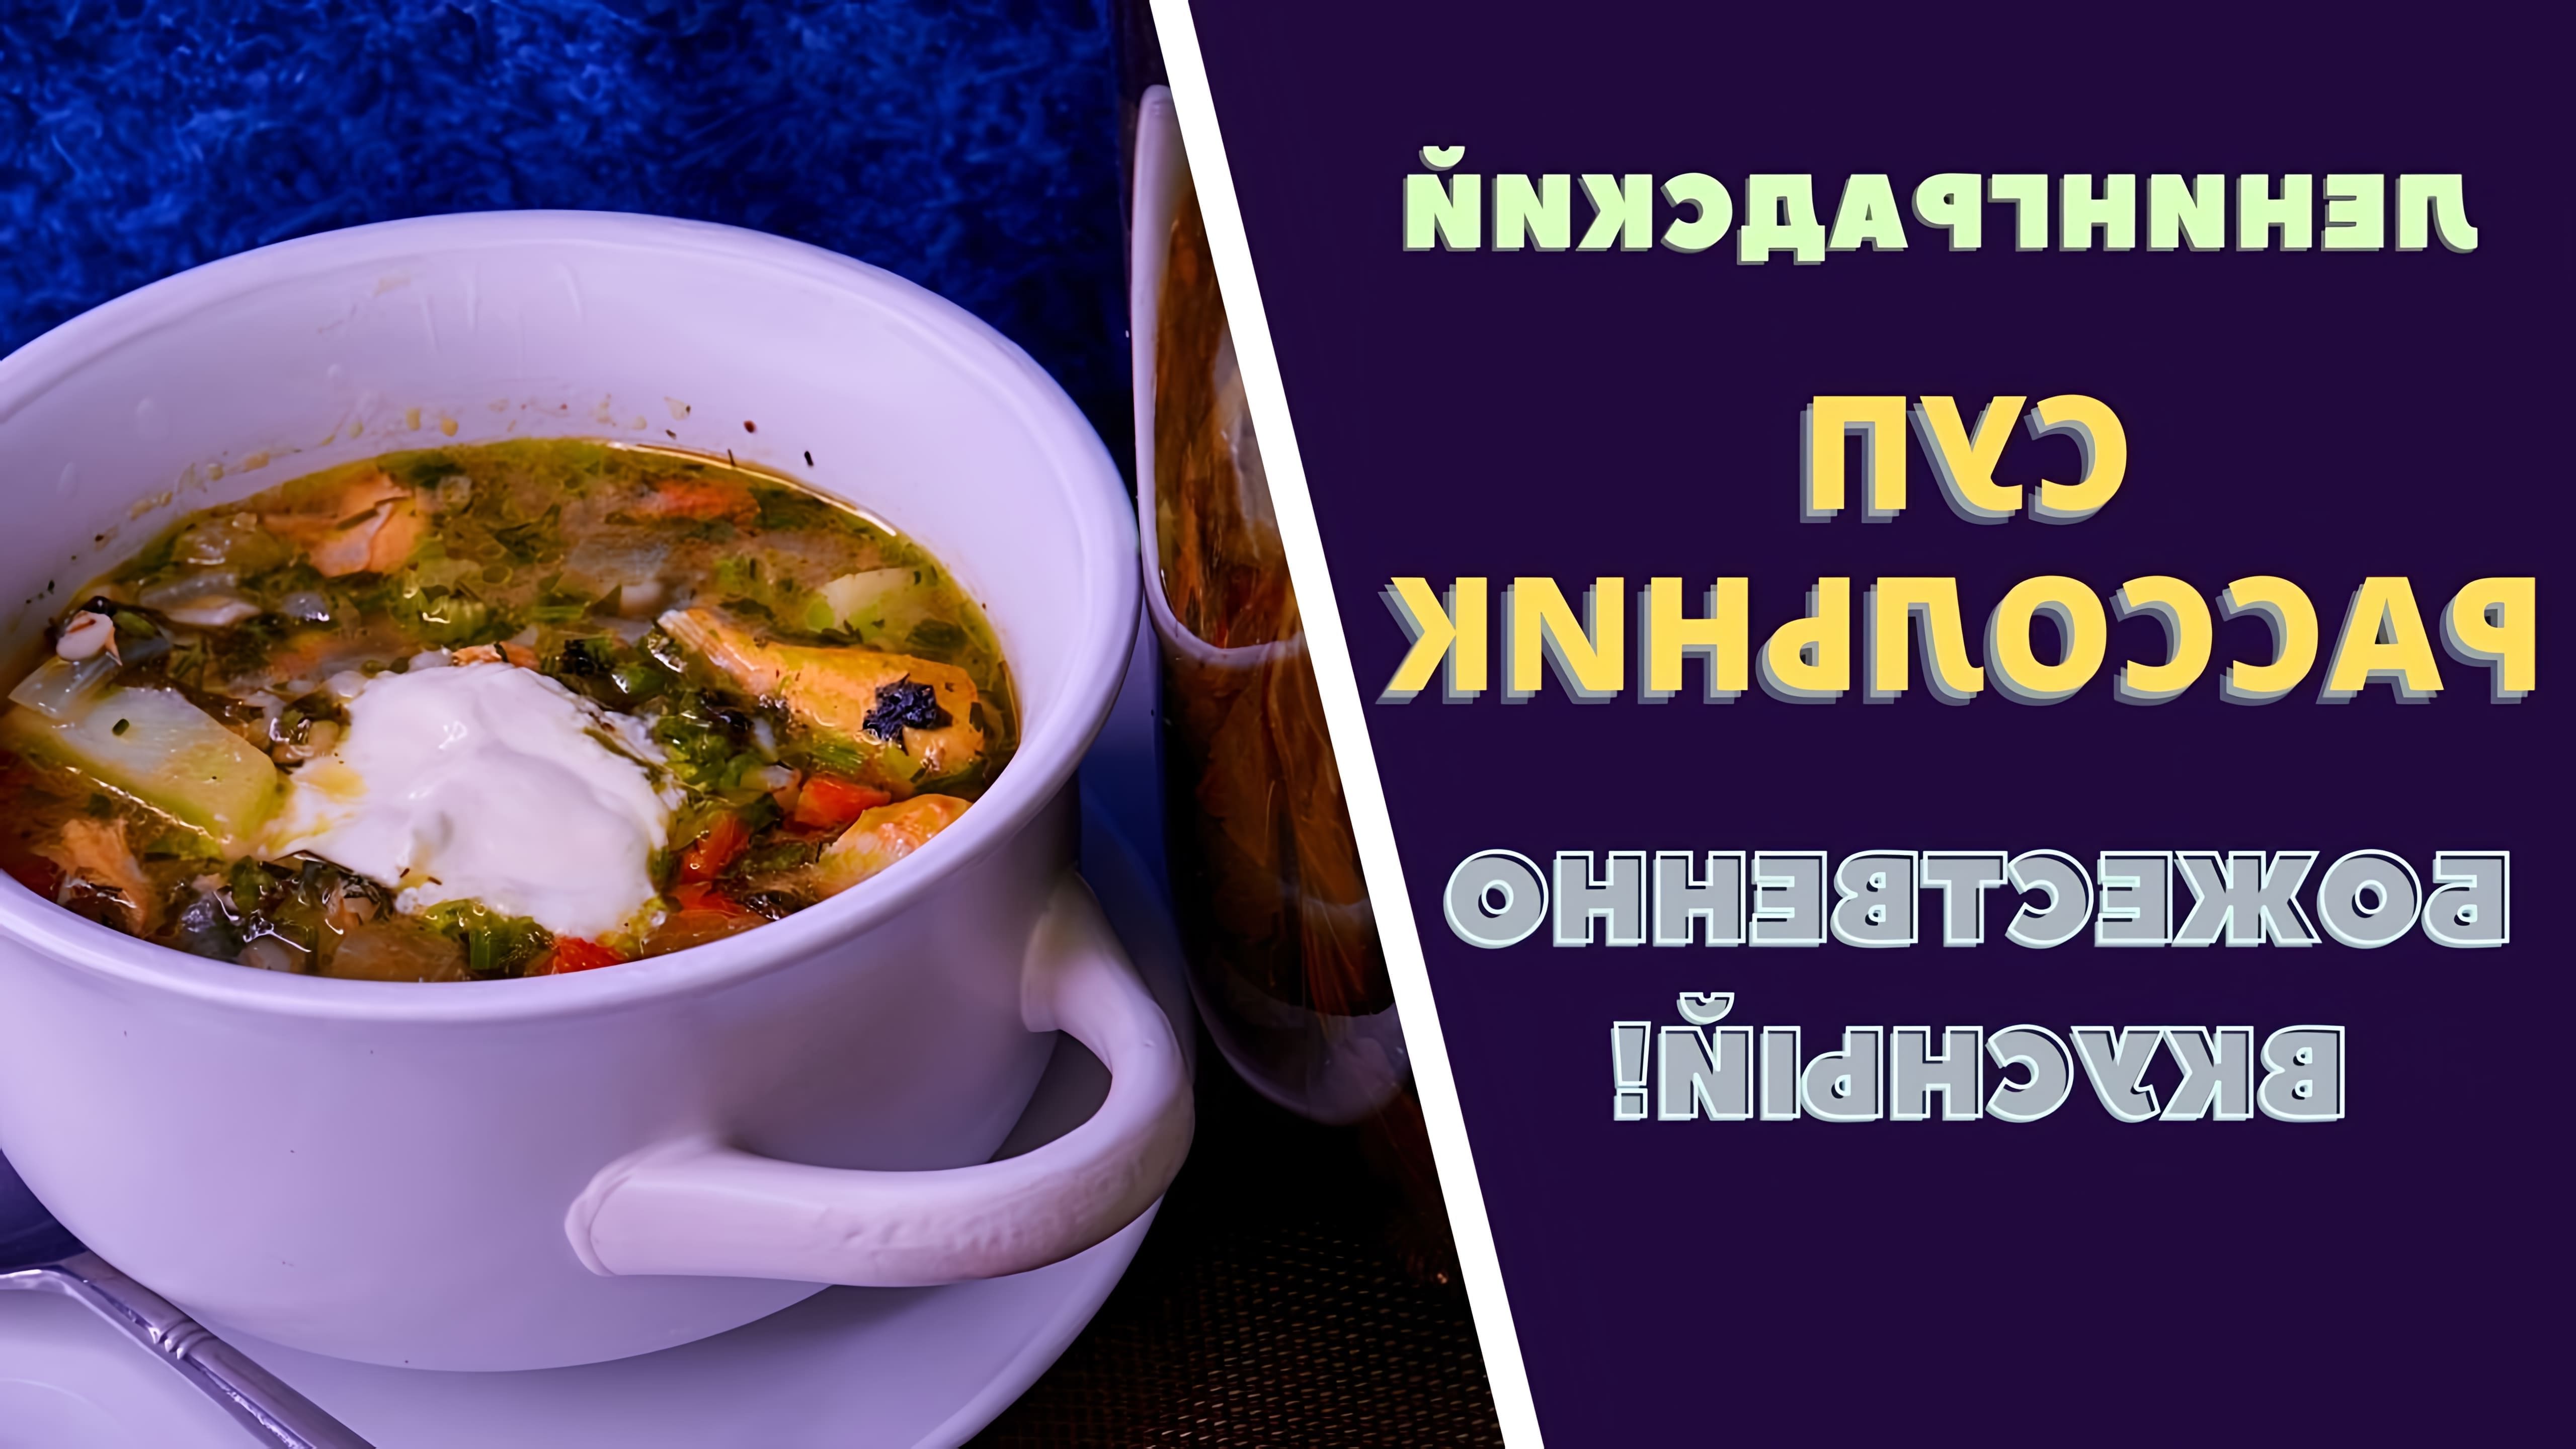 Видео посвящено приготовлению супа в ленинградском стиле "расольник", традиционного русского супа